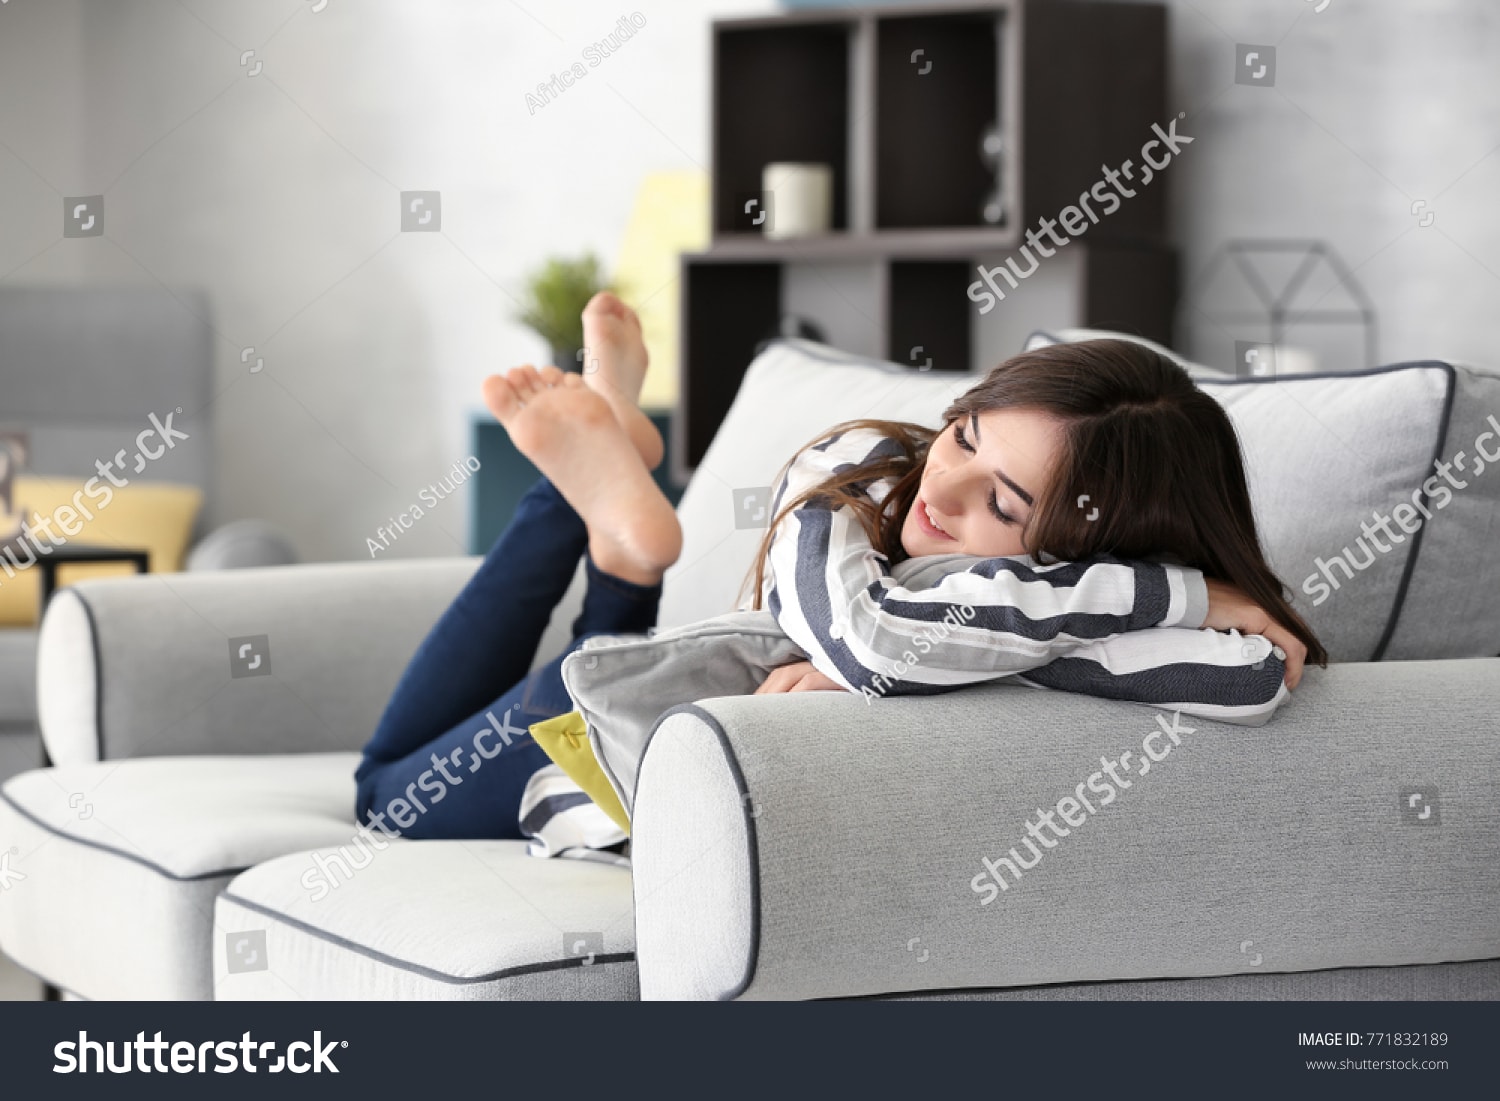 BananiVista, sofa